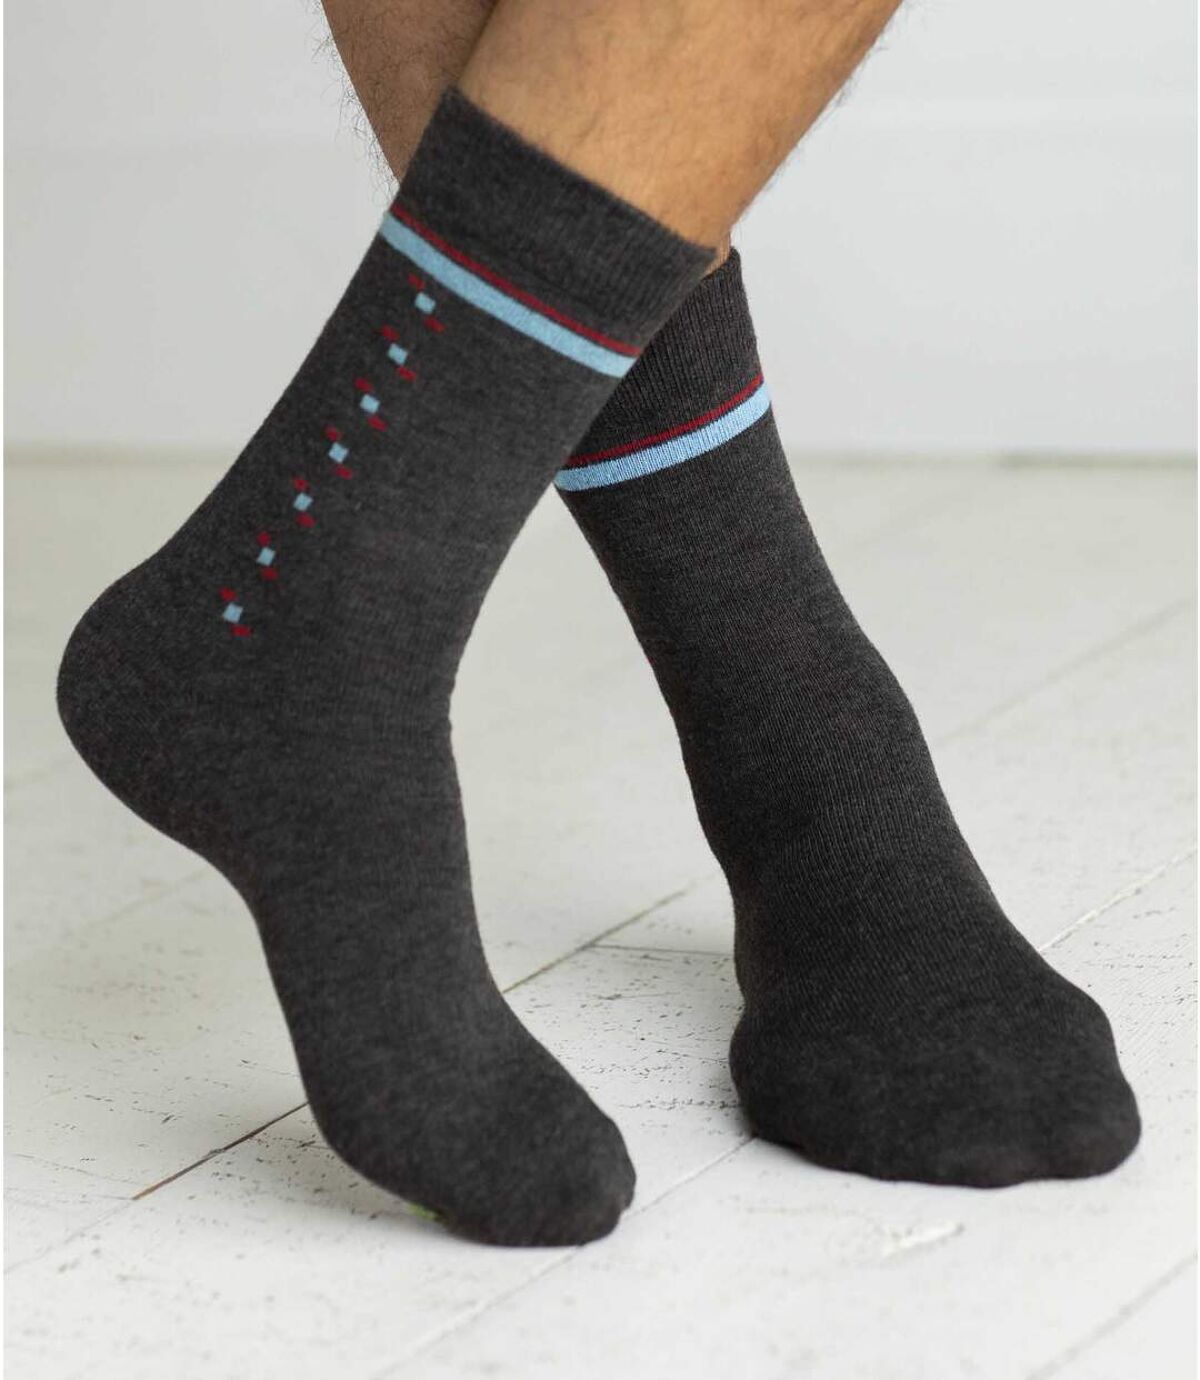 Pack of 4 Pairs of Men's Patterned Socks - Anthracite Light Grey Atlas For Men